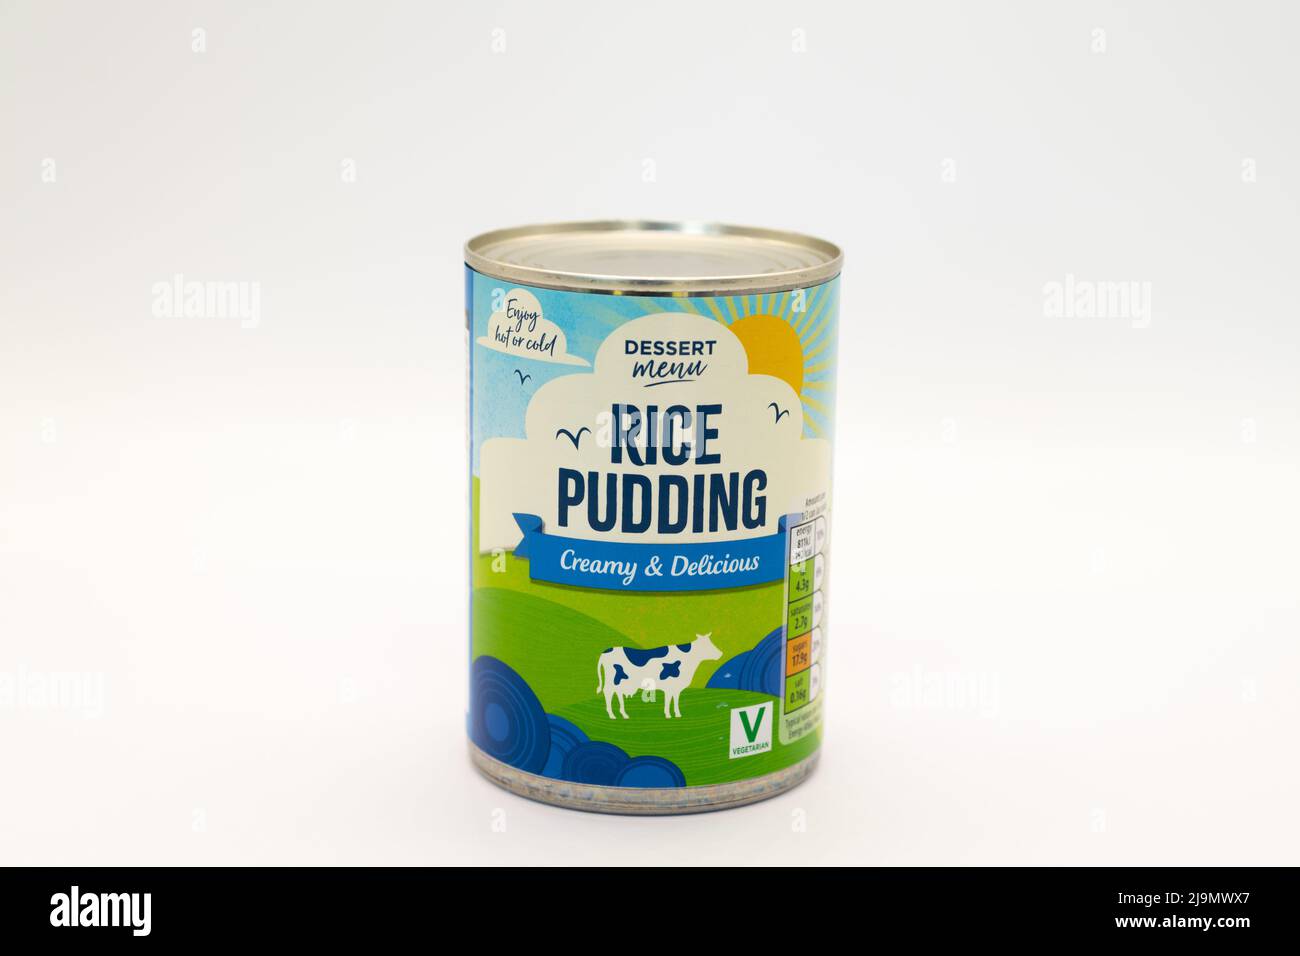 Irvine, Escocia, Reino Unido - 18 de mayo de 2022: Menú de postres de la marca Aldi Pudding de arroz en un estaño reciclable con tapa de anillo para la piscina. Foto de stock